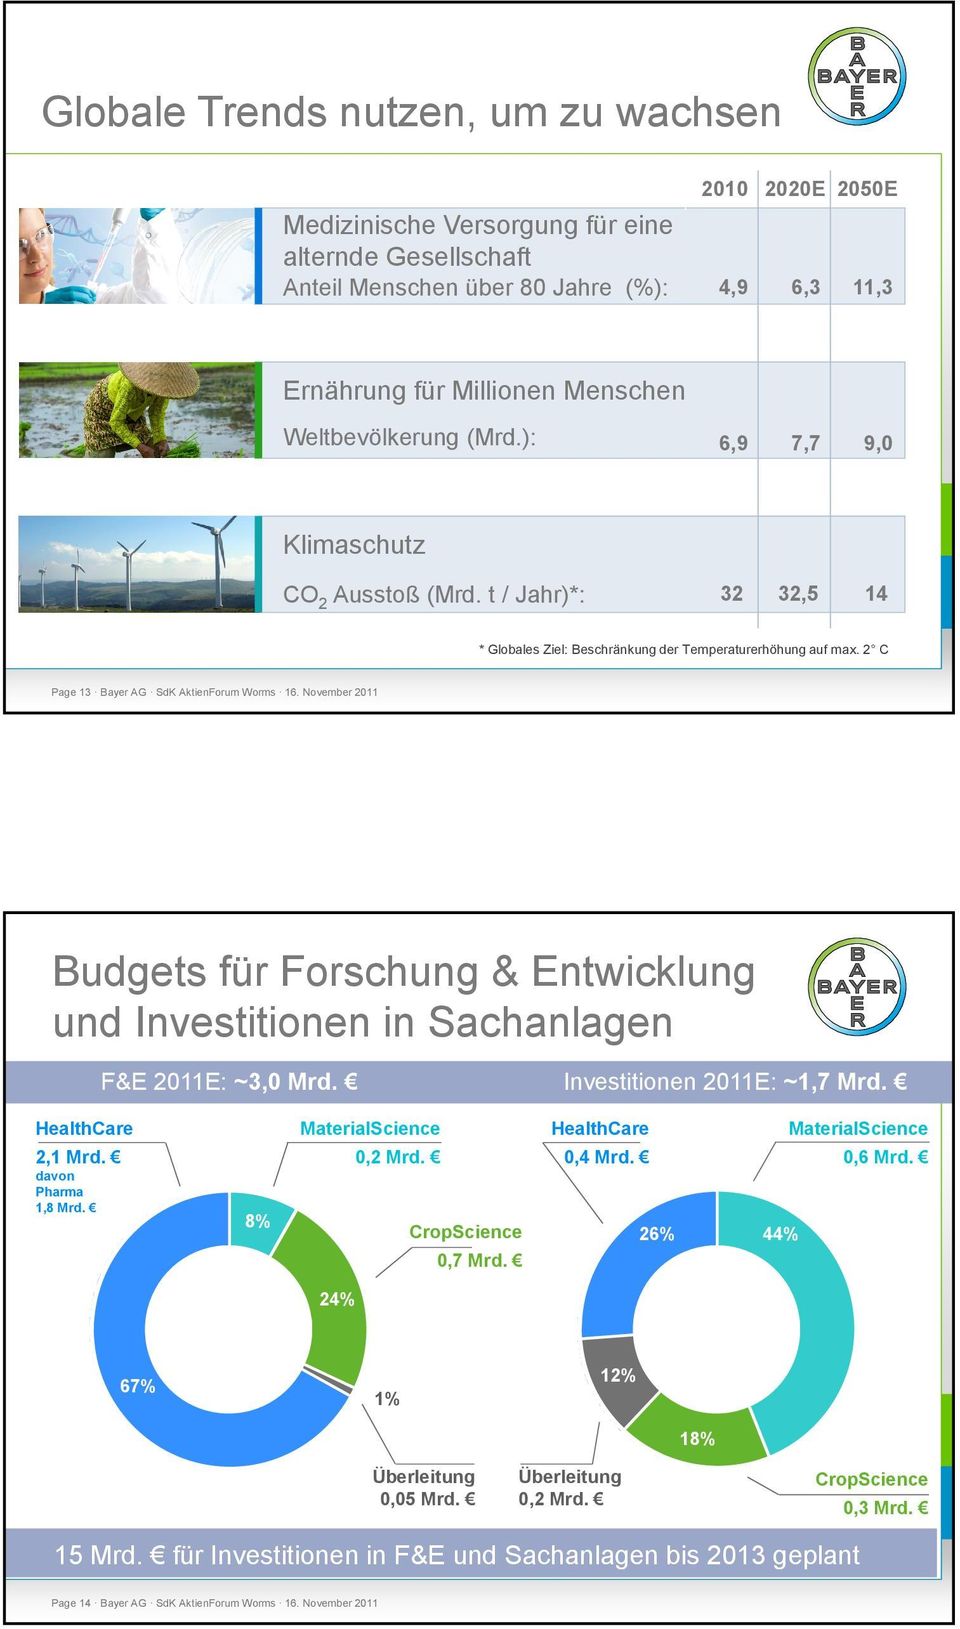 November 2011 Budgets für Forschung & Entwicklung und Investitionen in Sachanlagen F&E 2011E: ~3,0 Mrd. Investitionen 2011E: ~1,7 Mrd. HealthCare 2,1 Mrd. davon Pharma 1,8 Mrd.